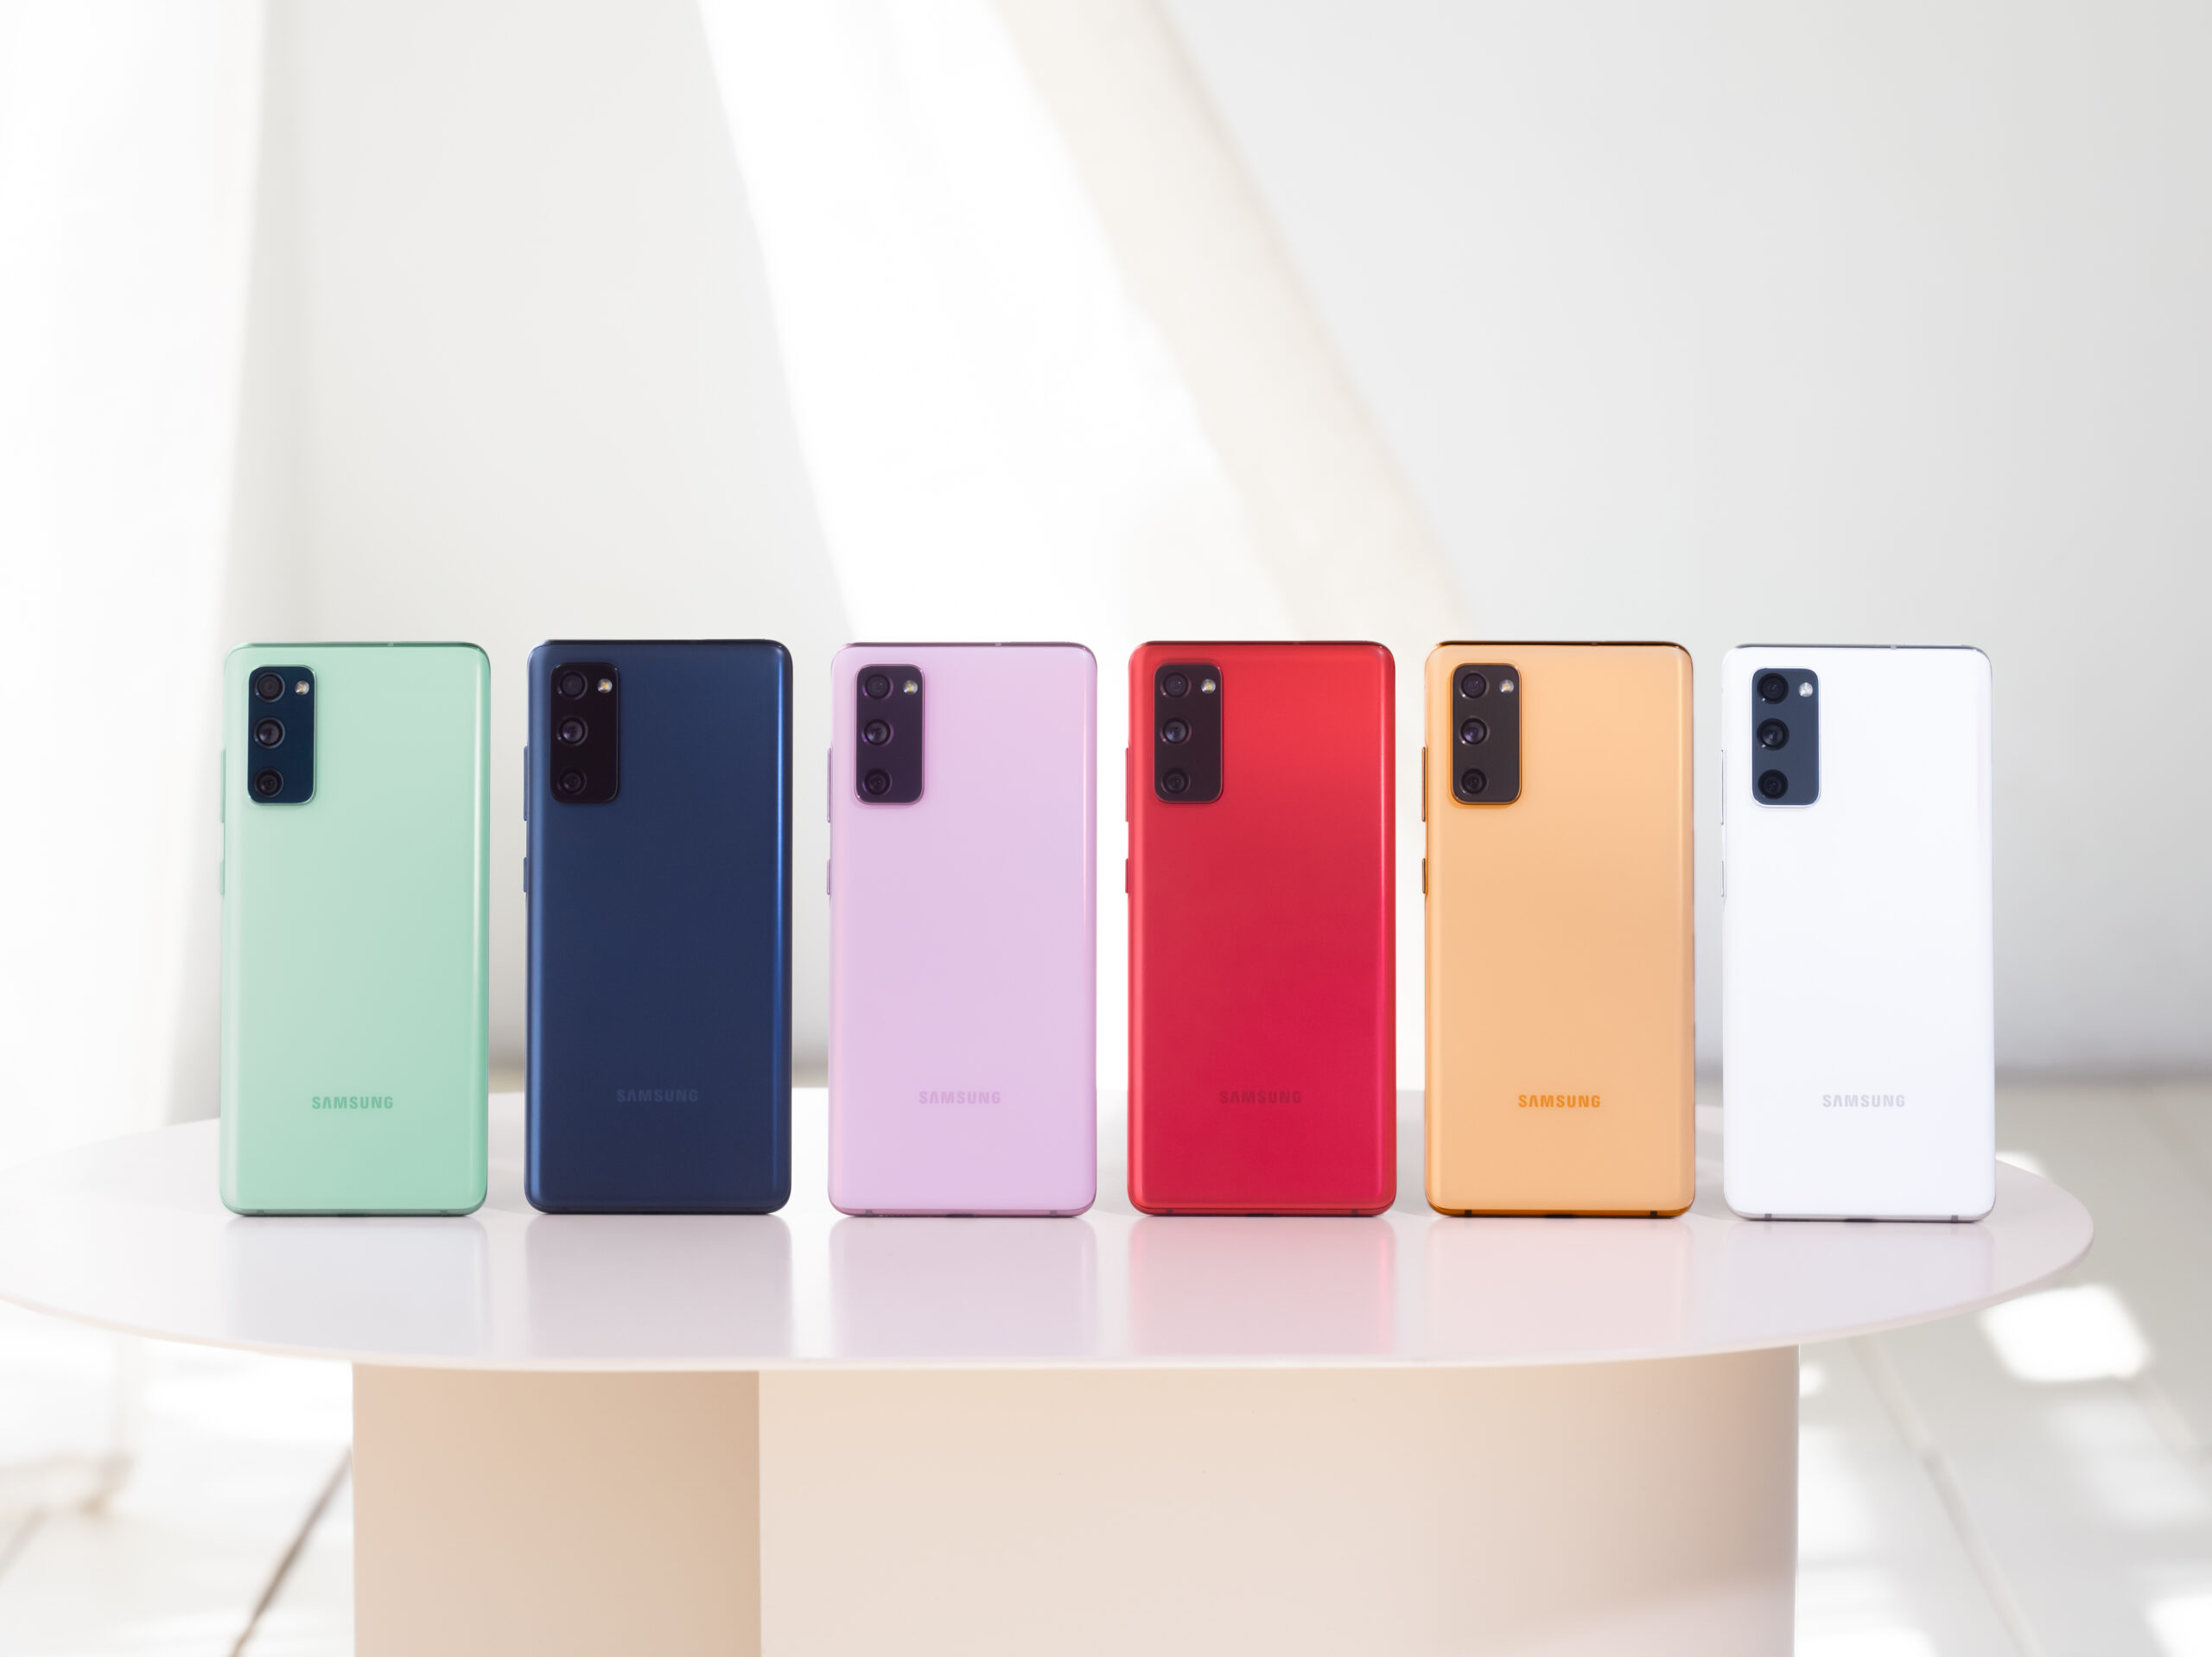 Samsung Electronics reveló el Galaxy S20 Fan Edition (FE), el nuevo integrante de la serie Galaxy S20. Este dispositivo premium trae innovaciones increibles